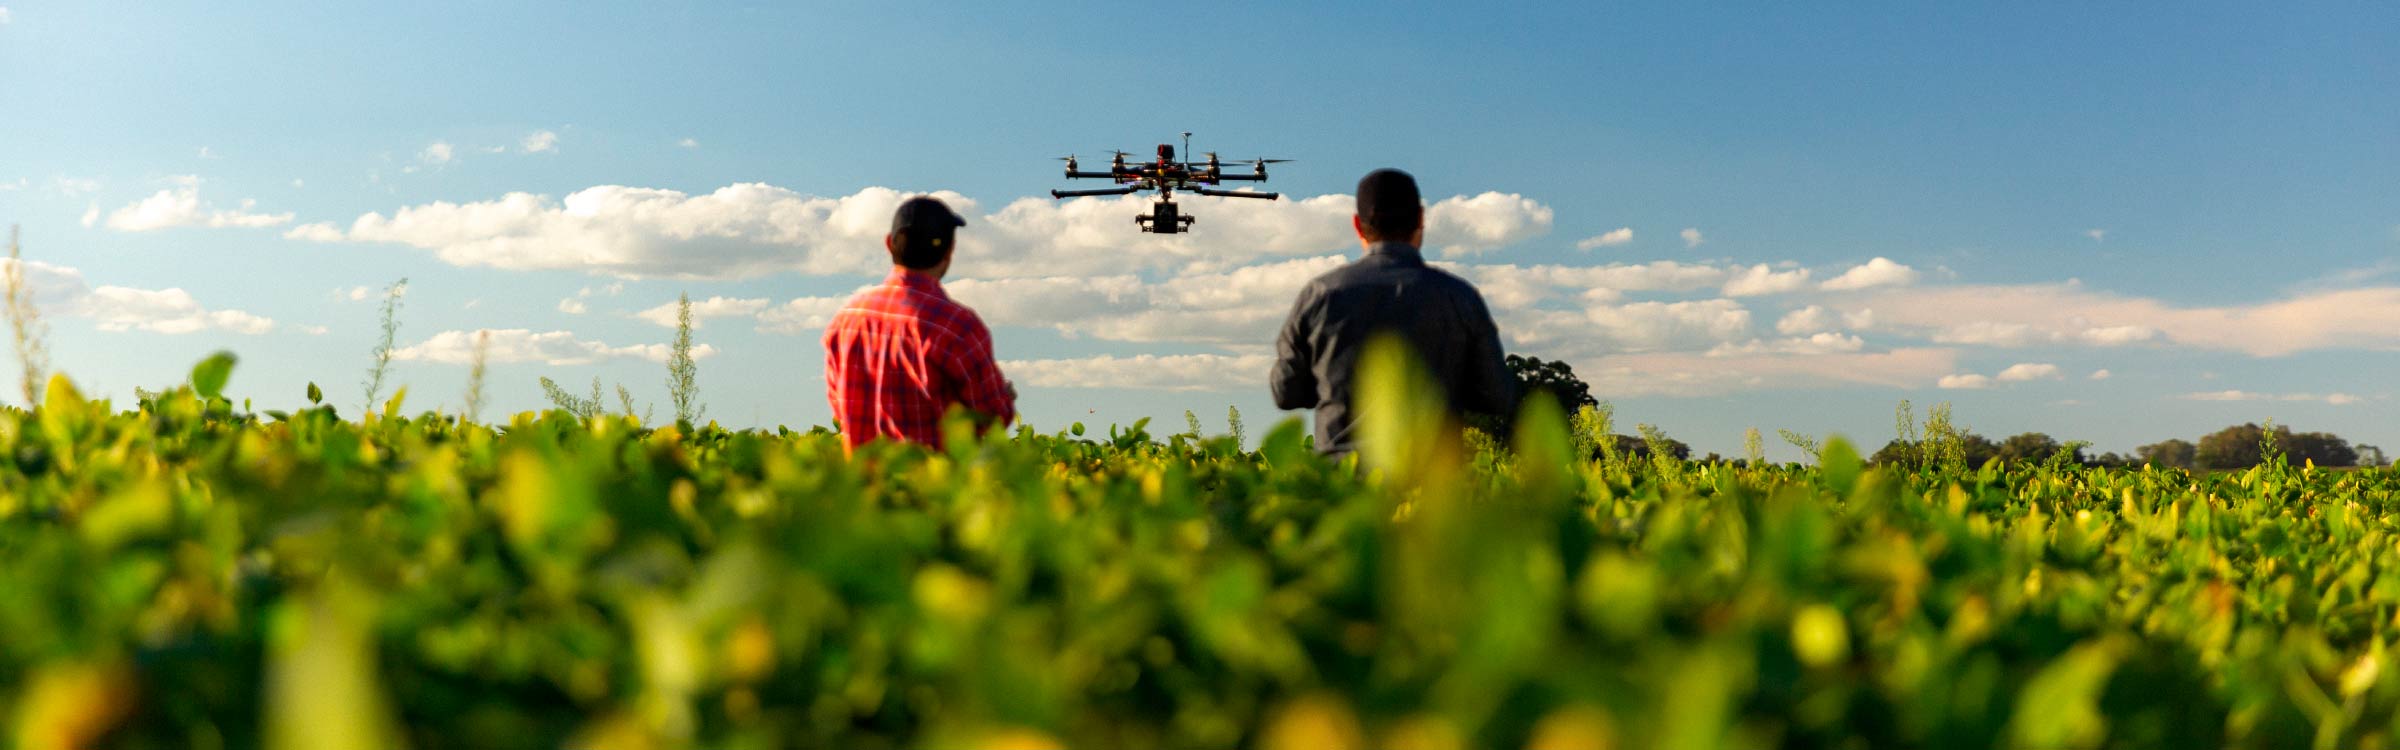 dos personas en un prado, manejando un dron